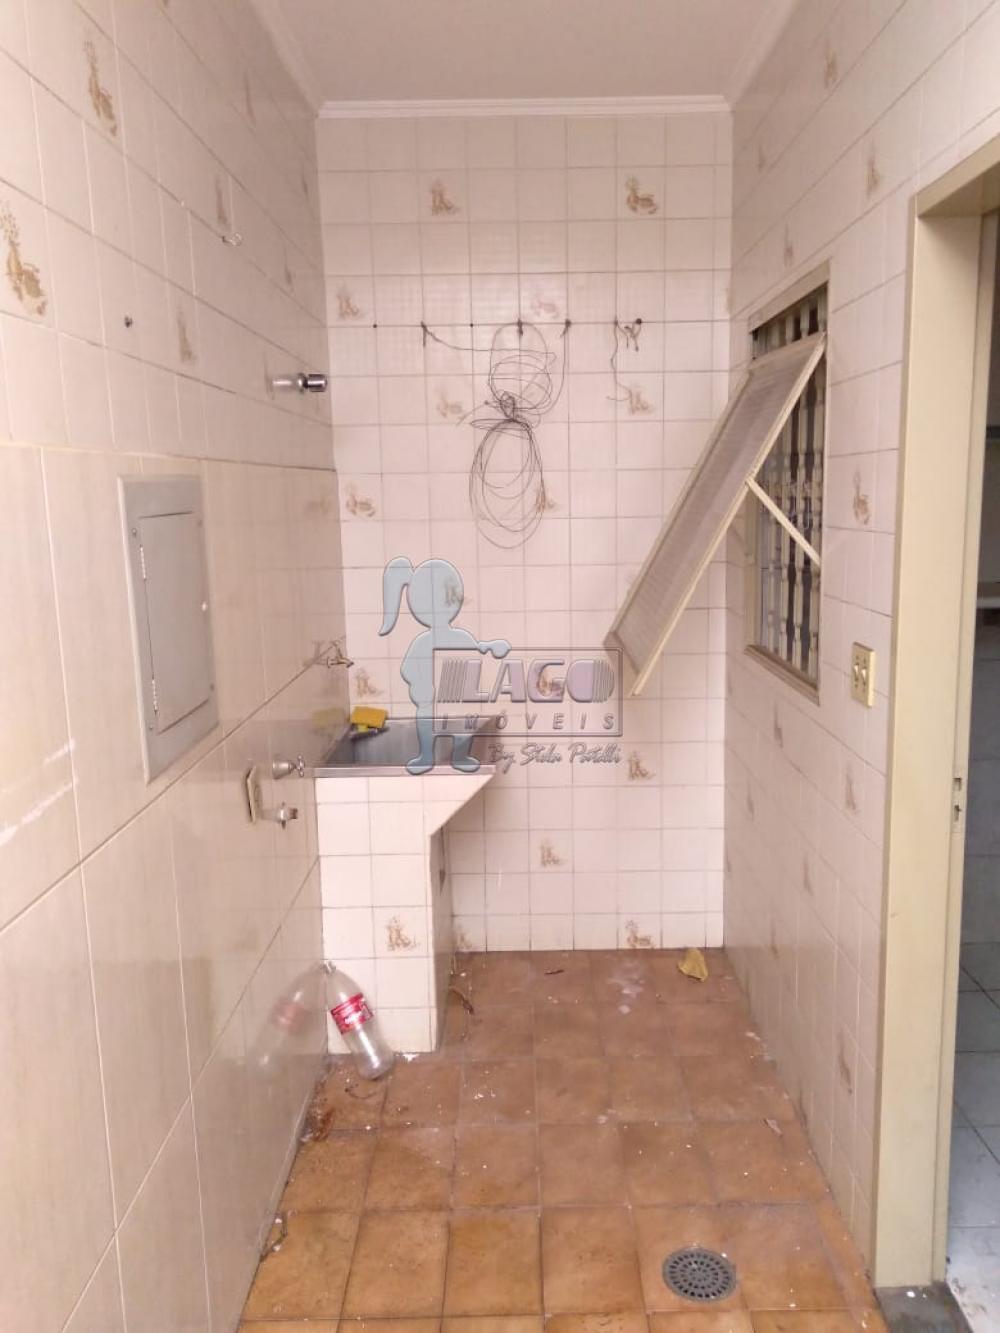 Comprar Casa / Padrão em Ribeirão Preto R$ 850.000,00 - Foto 11